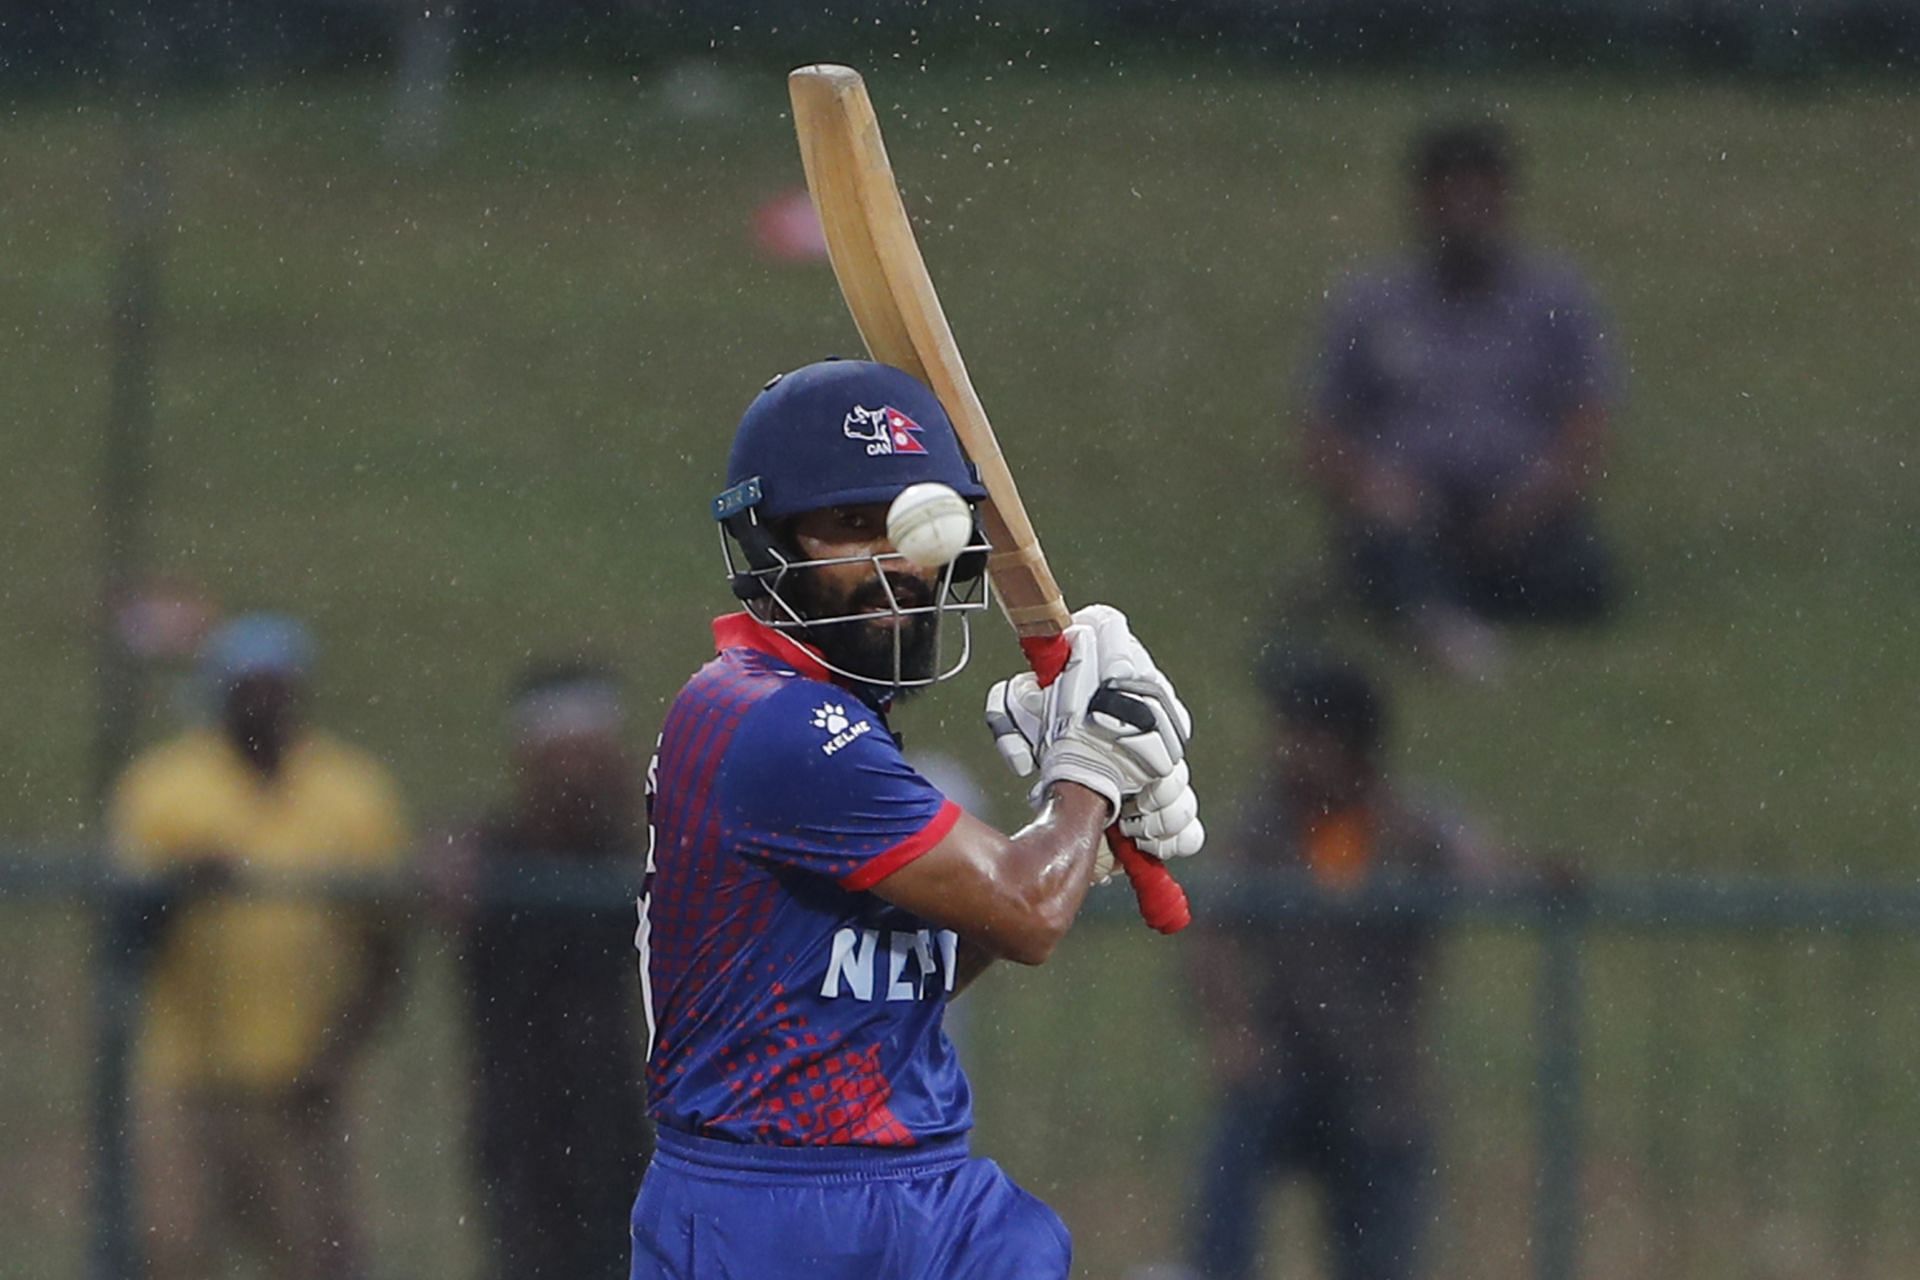 दीपेंद्र सिंह ऐरी टी20 इंटरनेशनल क्रिकेट में युवराज सिंह का रिकॉर्ड तोड़ चुके हैं